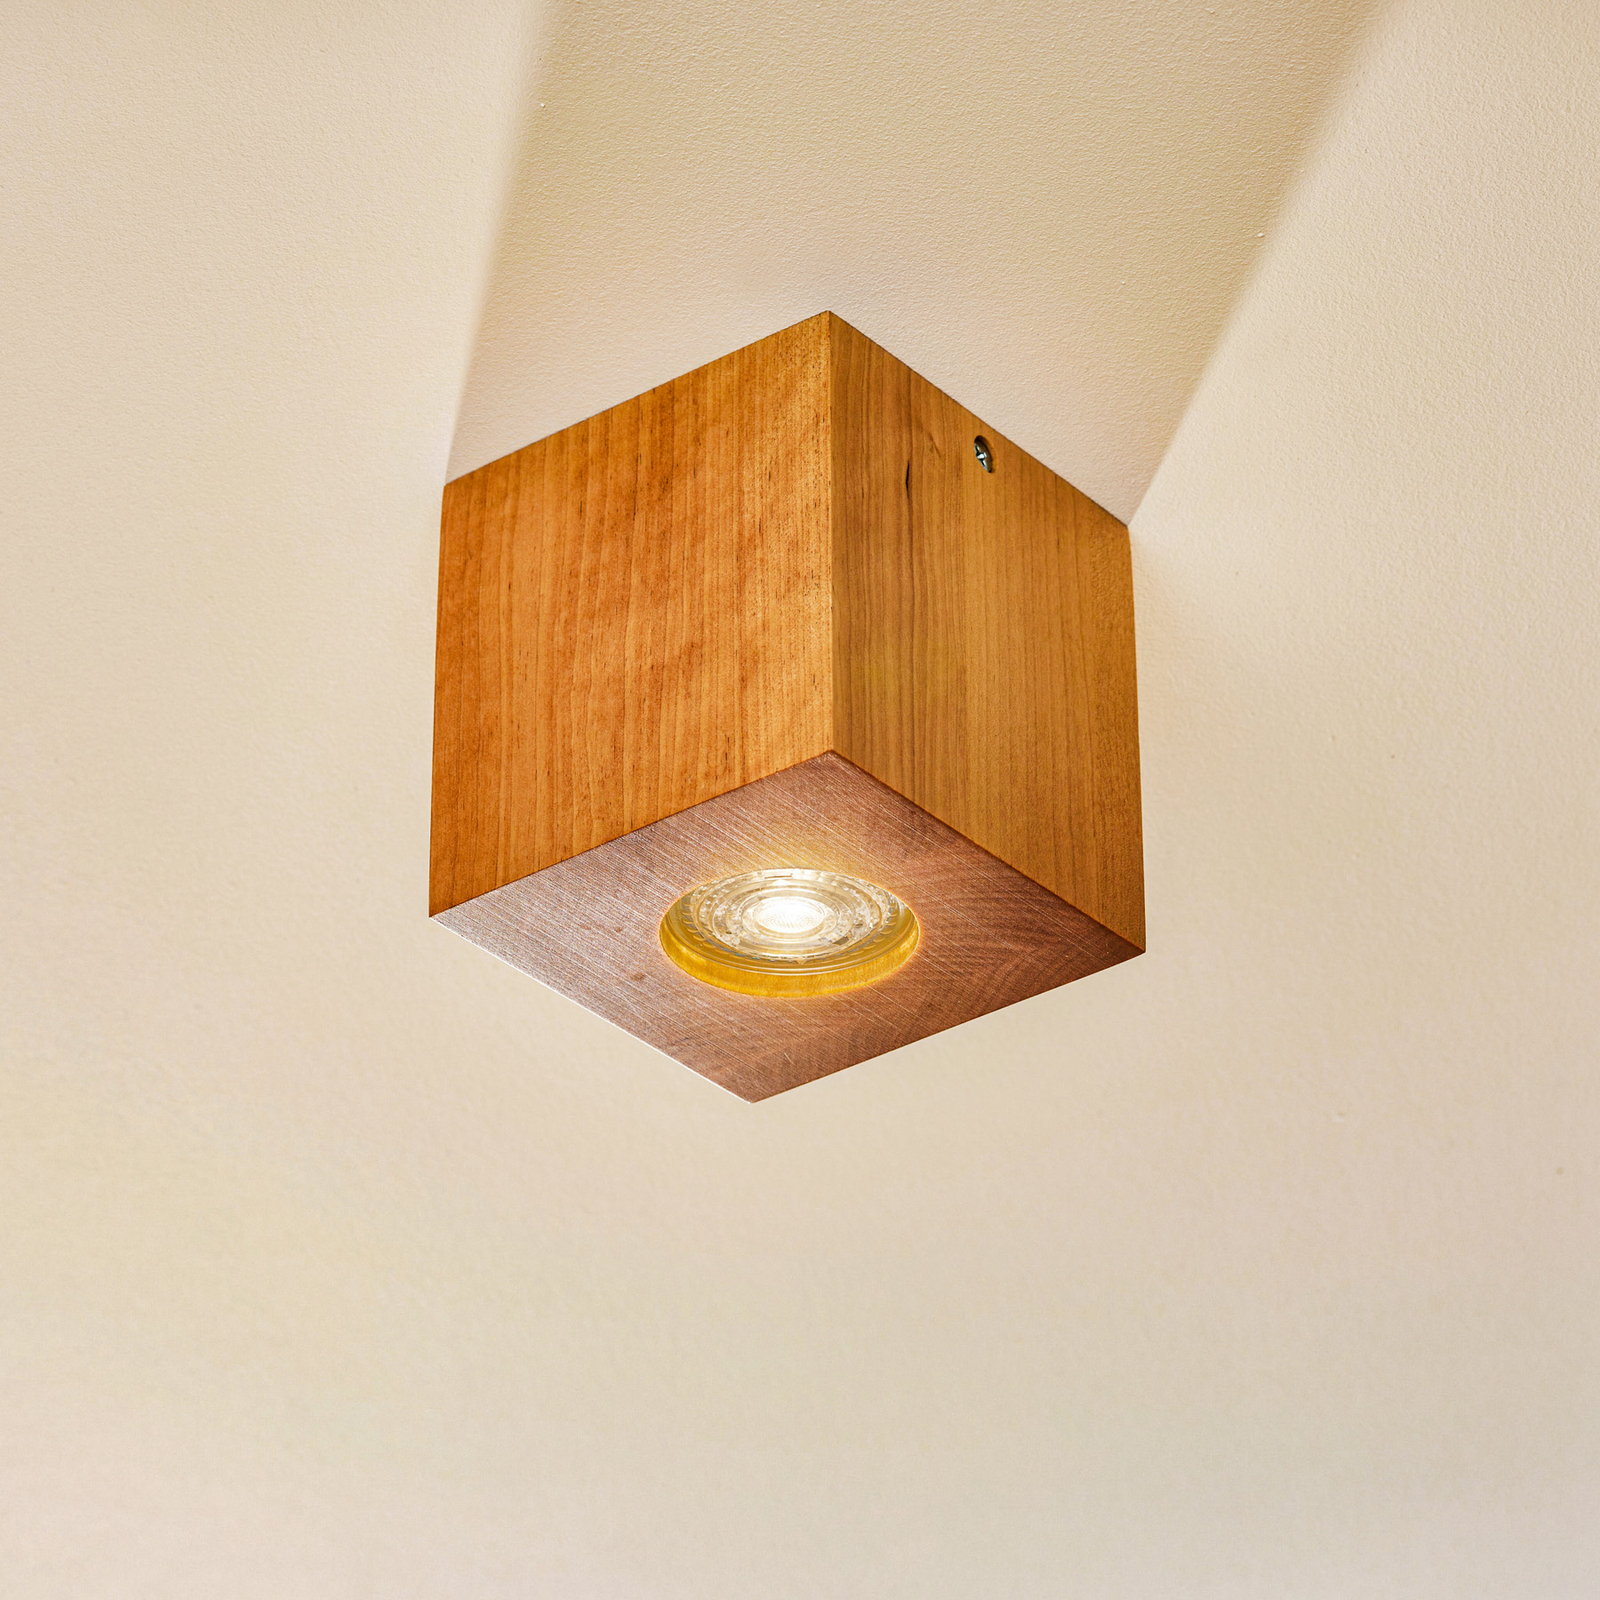 Lampa sufitowa Ara w formie drewnianej kostki